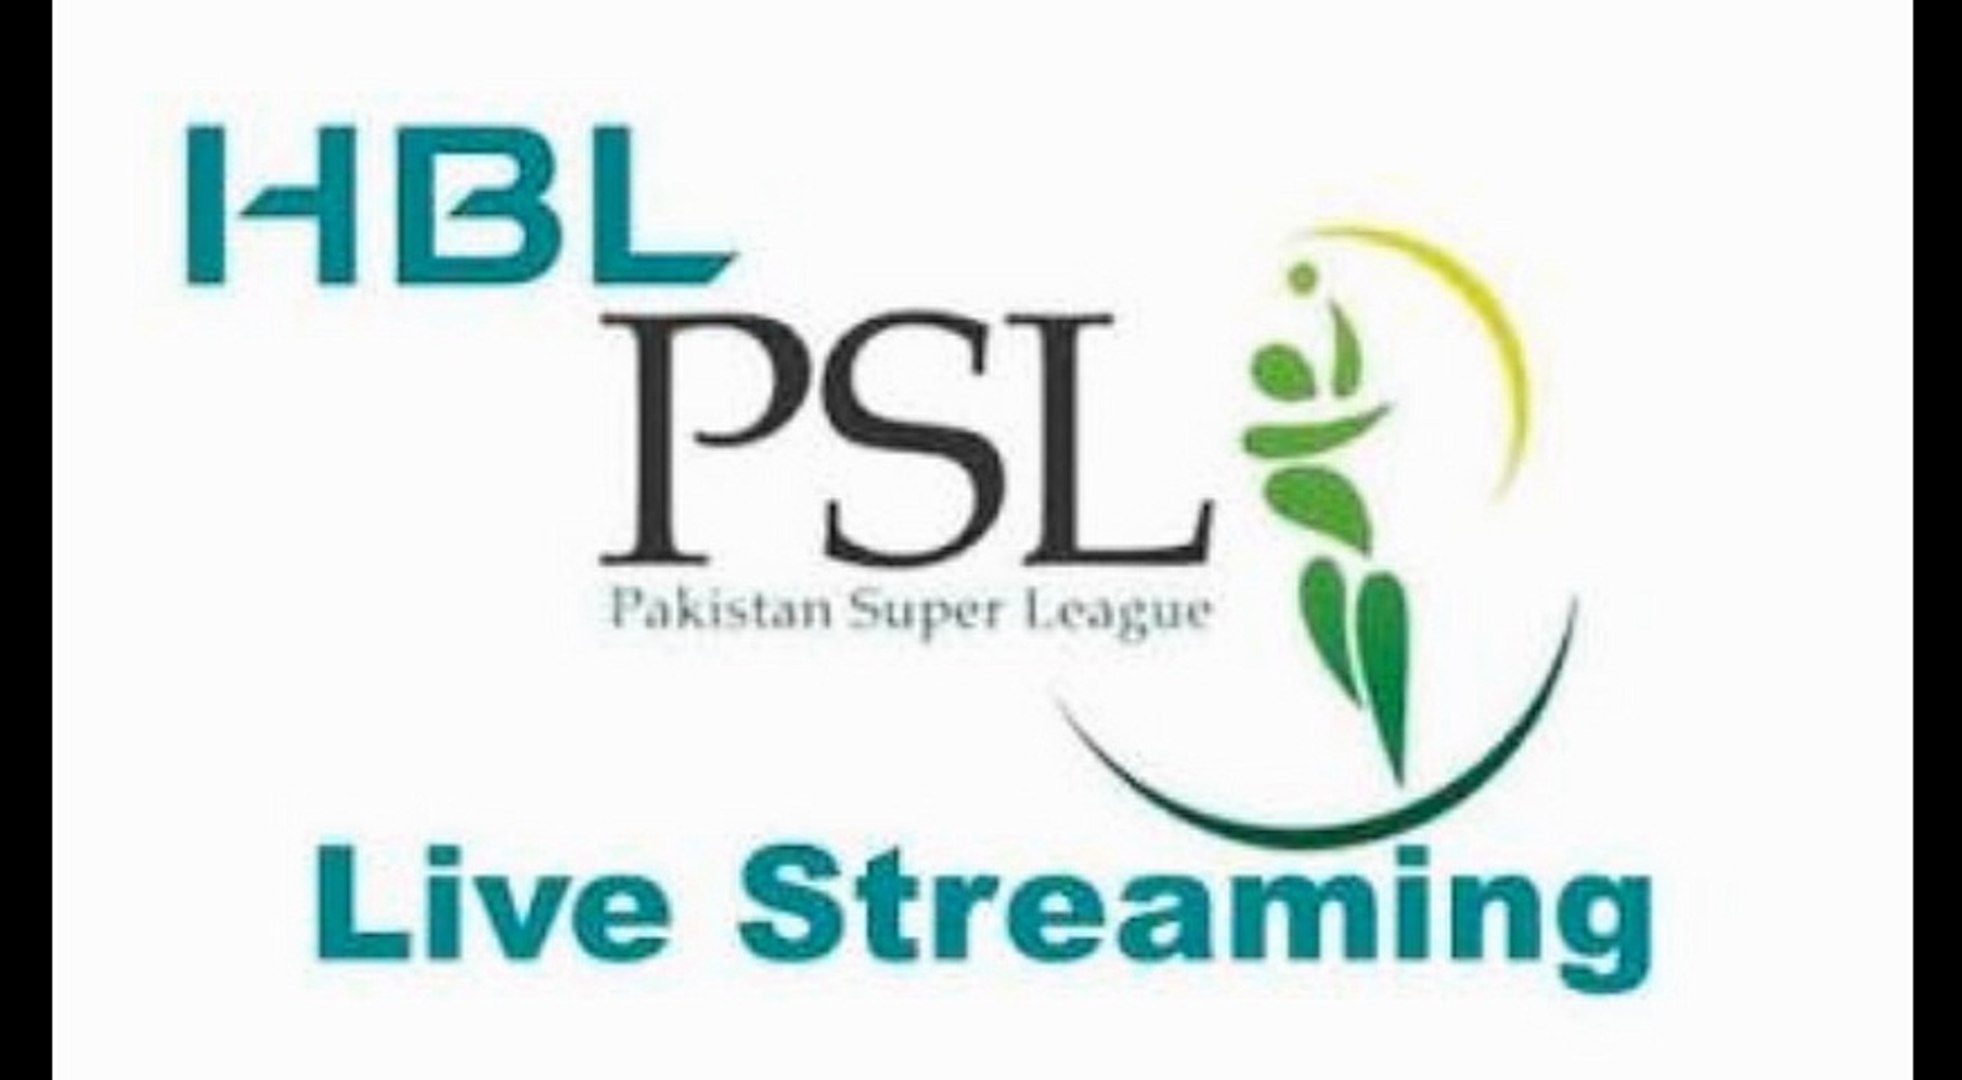 PSL T20 pakistan super league live streaming